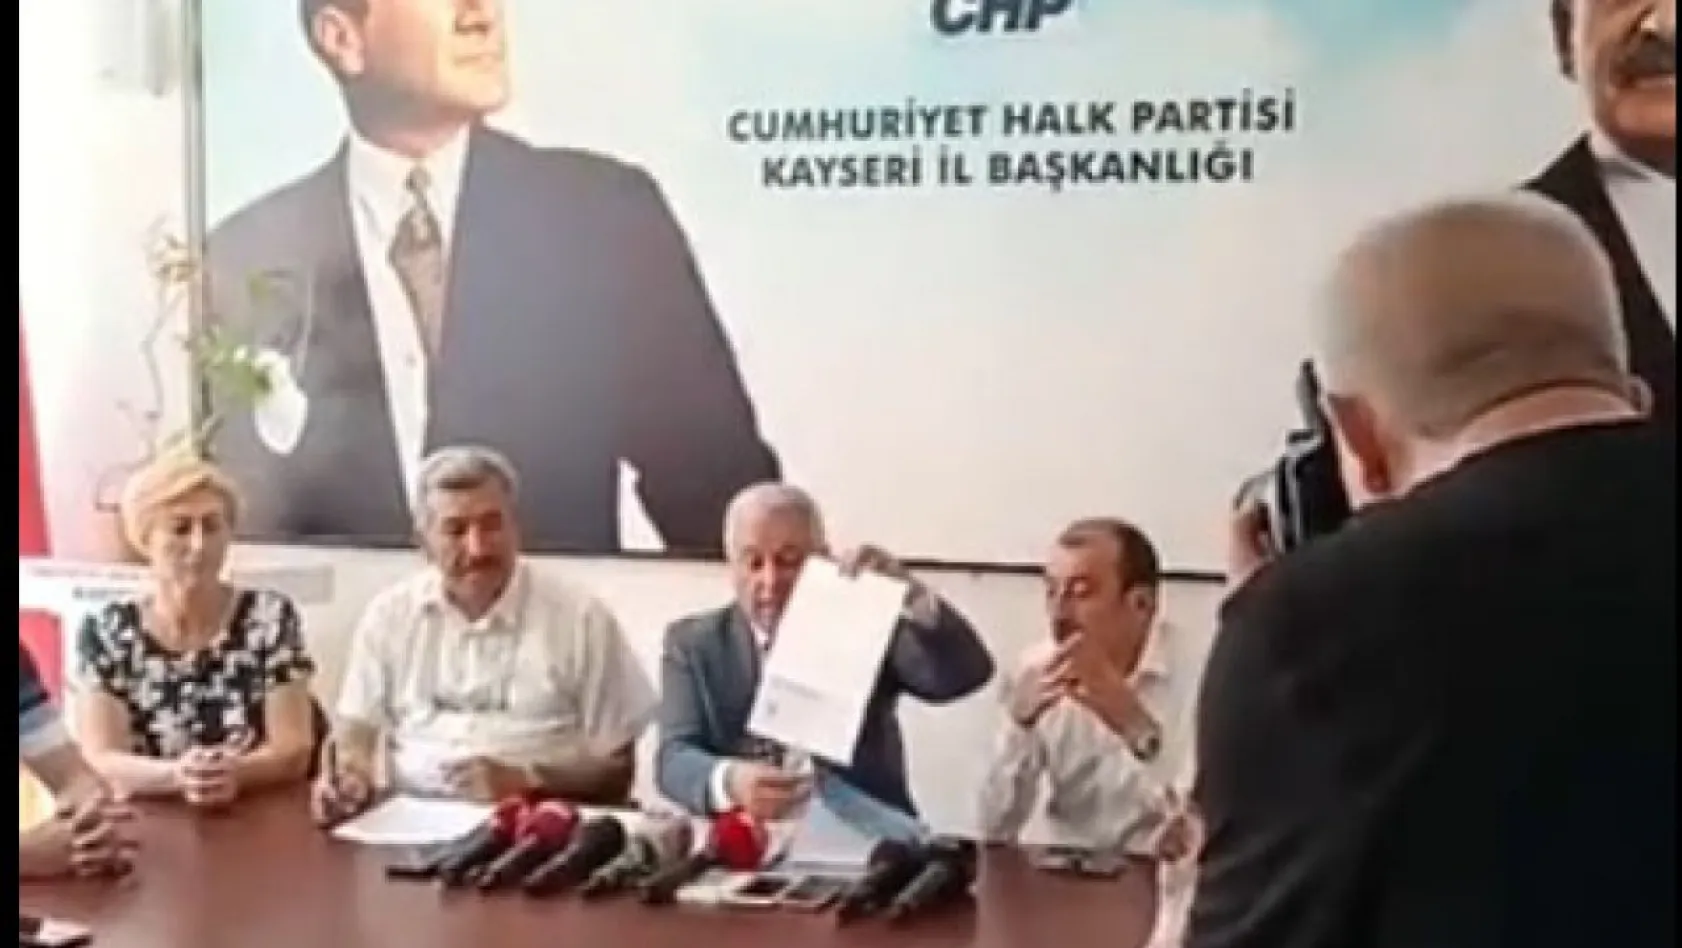 Islak imzaları gösteren Arık: AKP ve küçük ortağı telaş içinde! Muhtarımızı o duruma düşürenler utansın